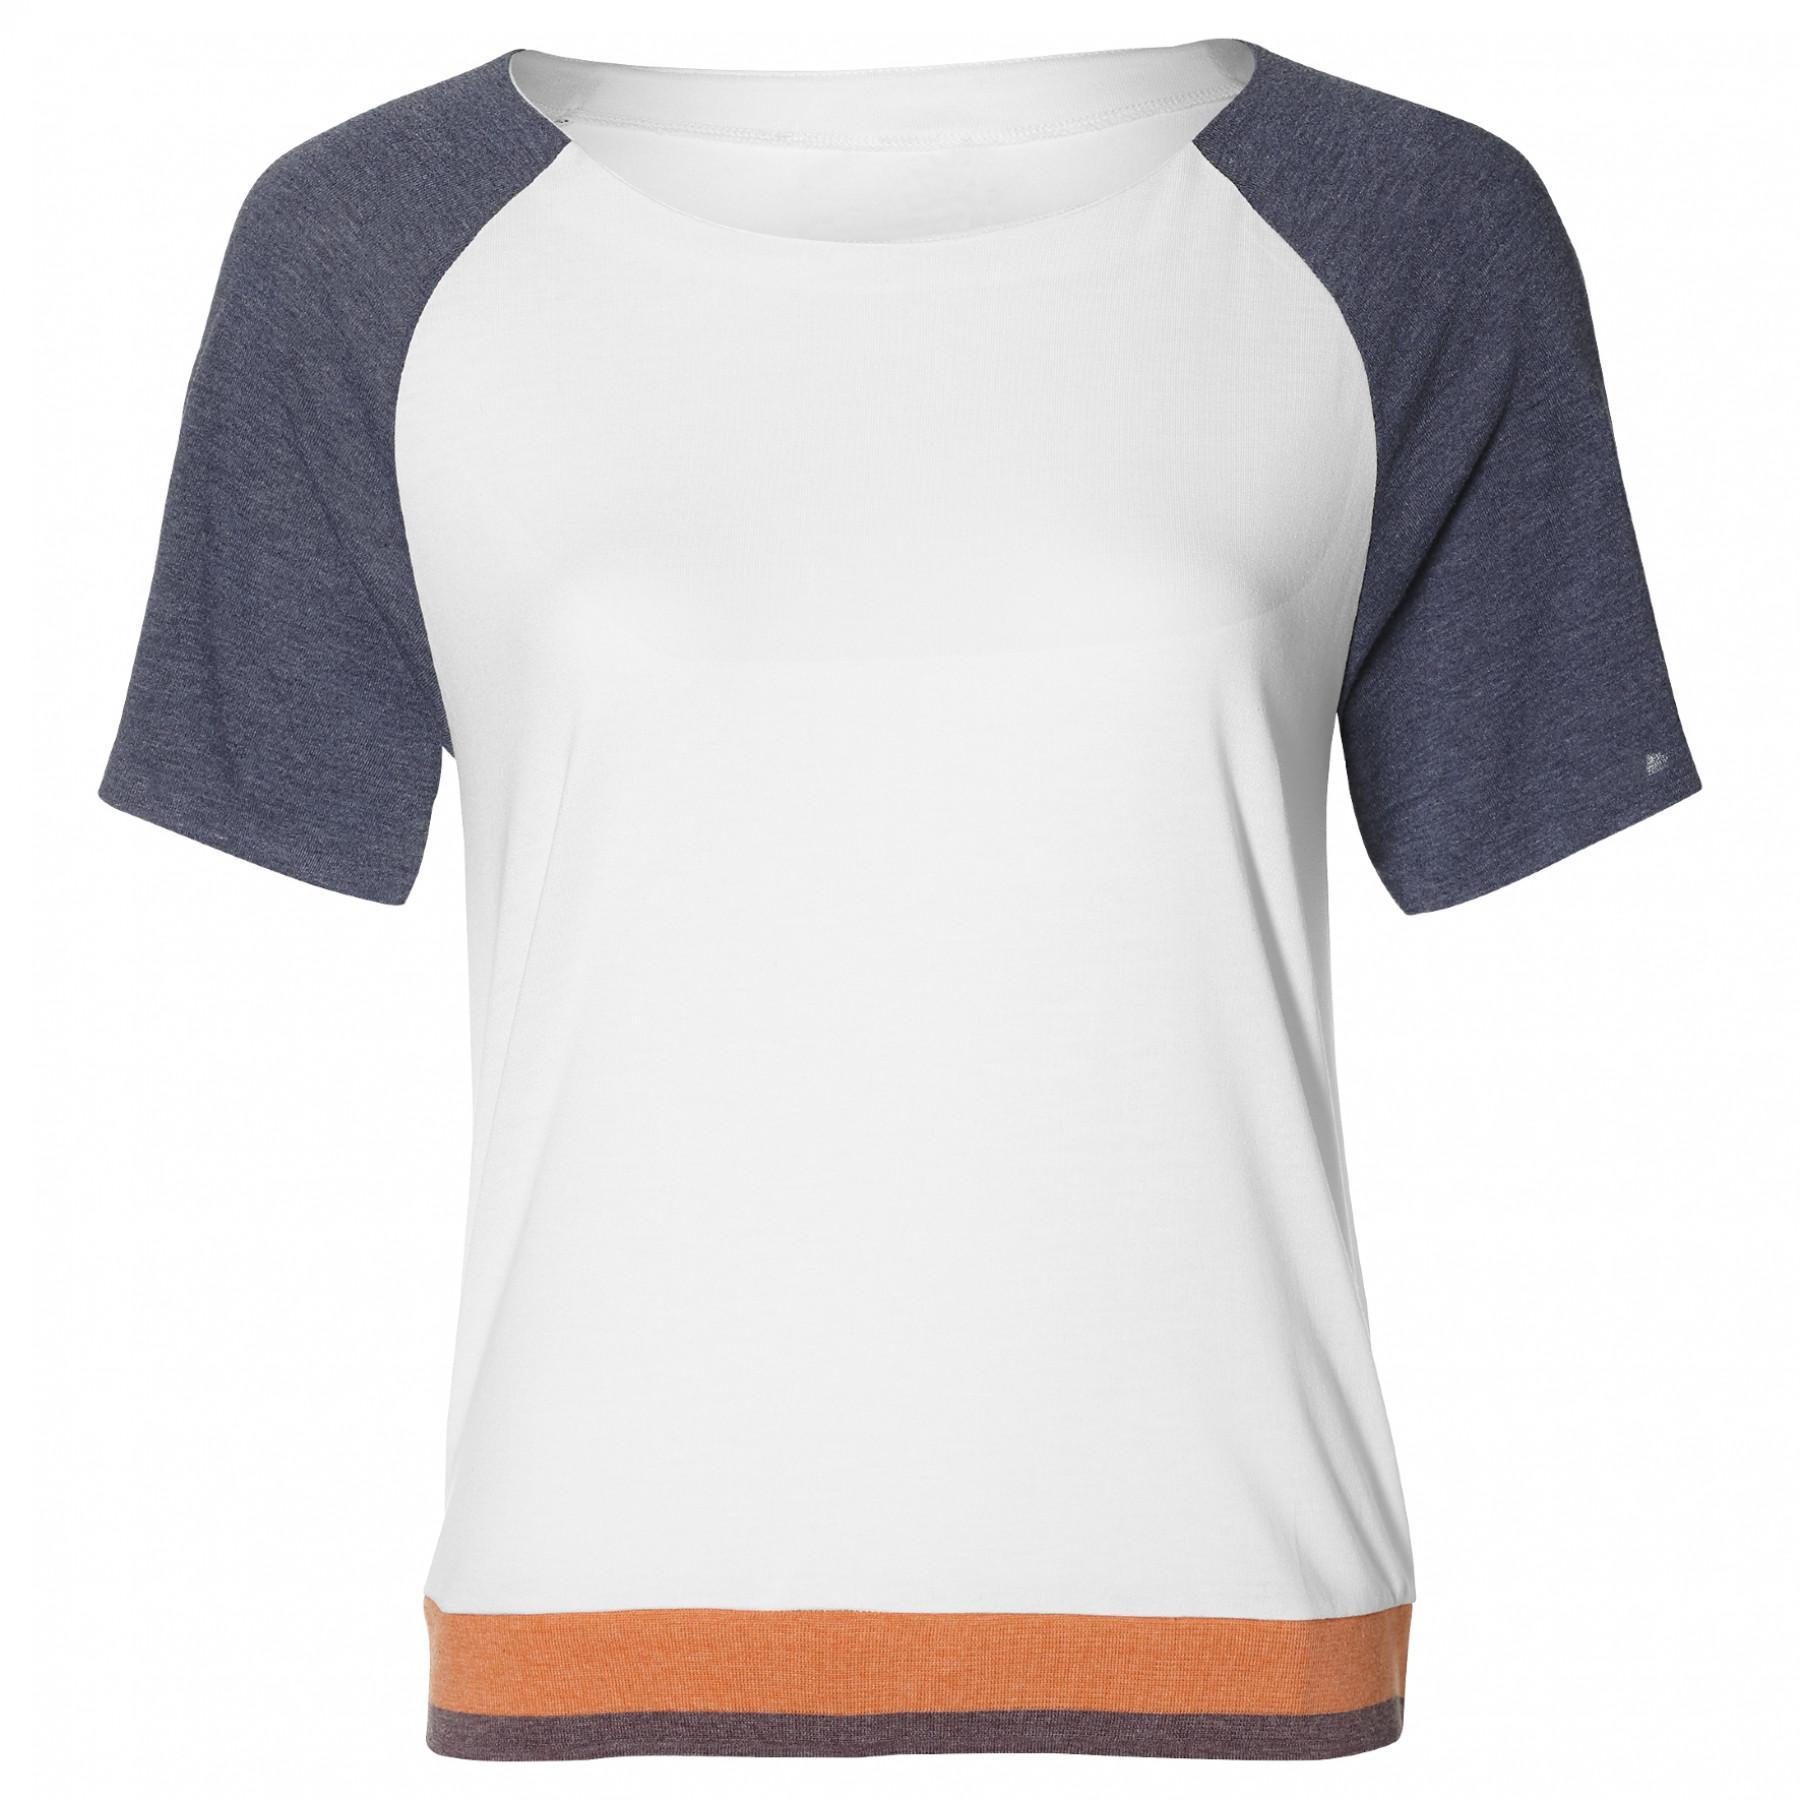 Camiseta de mujer Asics Gel Cool 2 Top